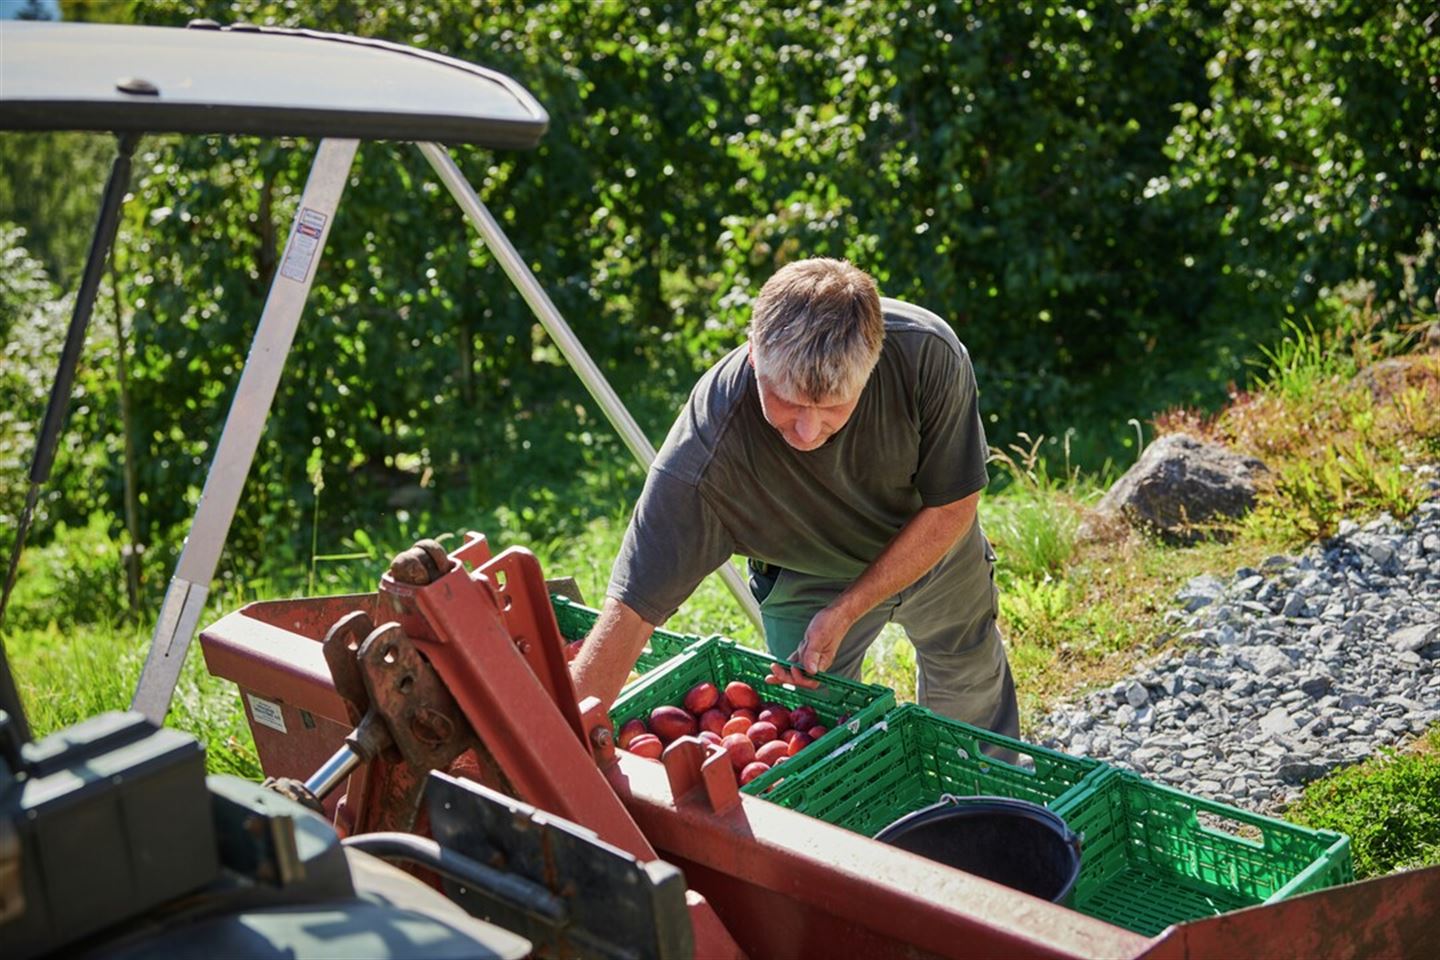 Mann ved traktor som ber ein kasse med frukt.